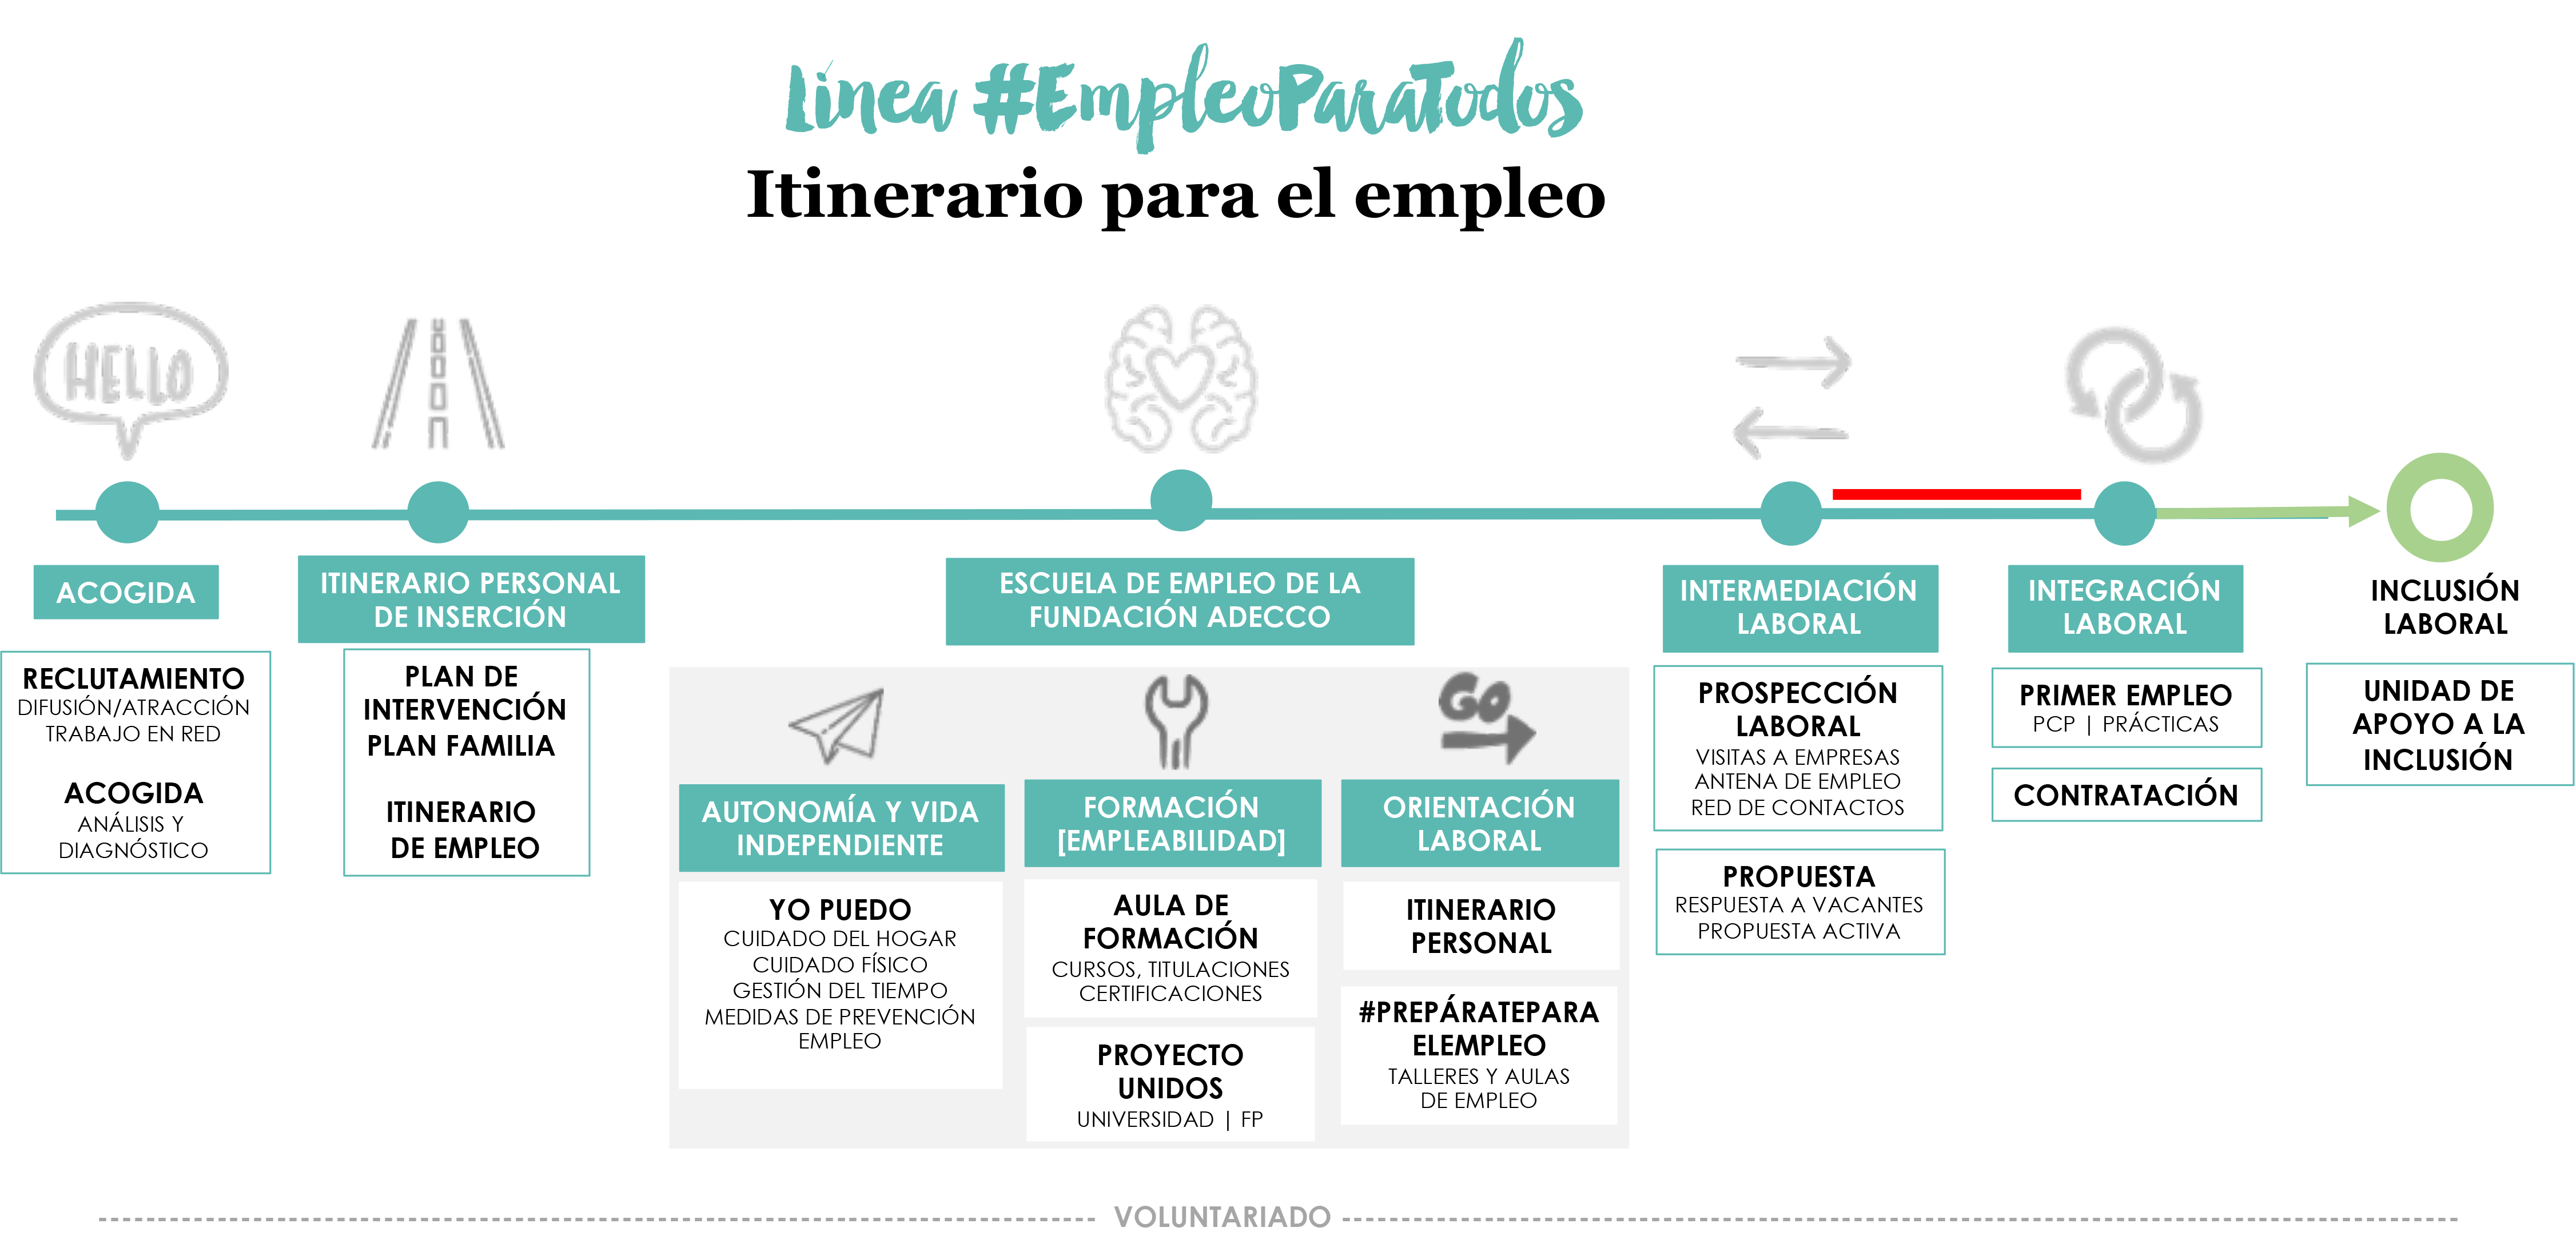 #Empleoparatodos / Fundación Adecco